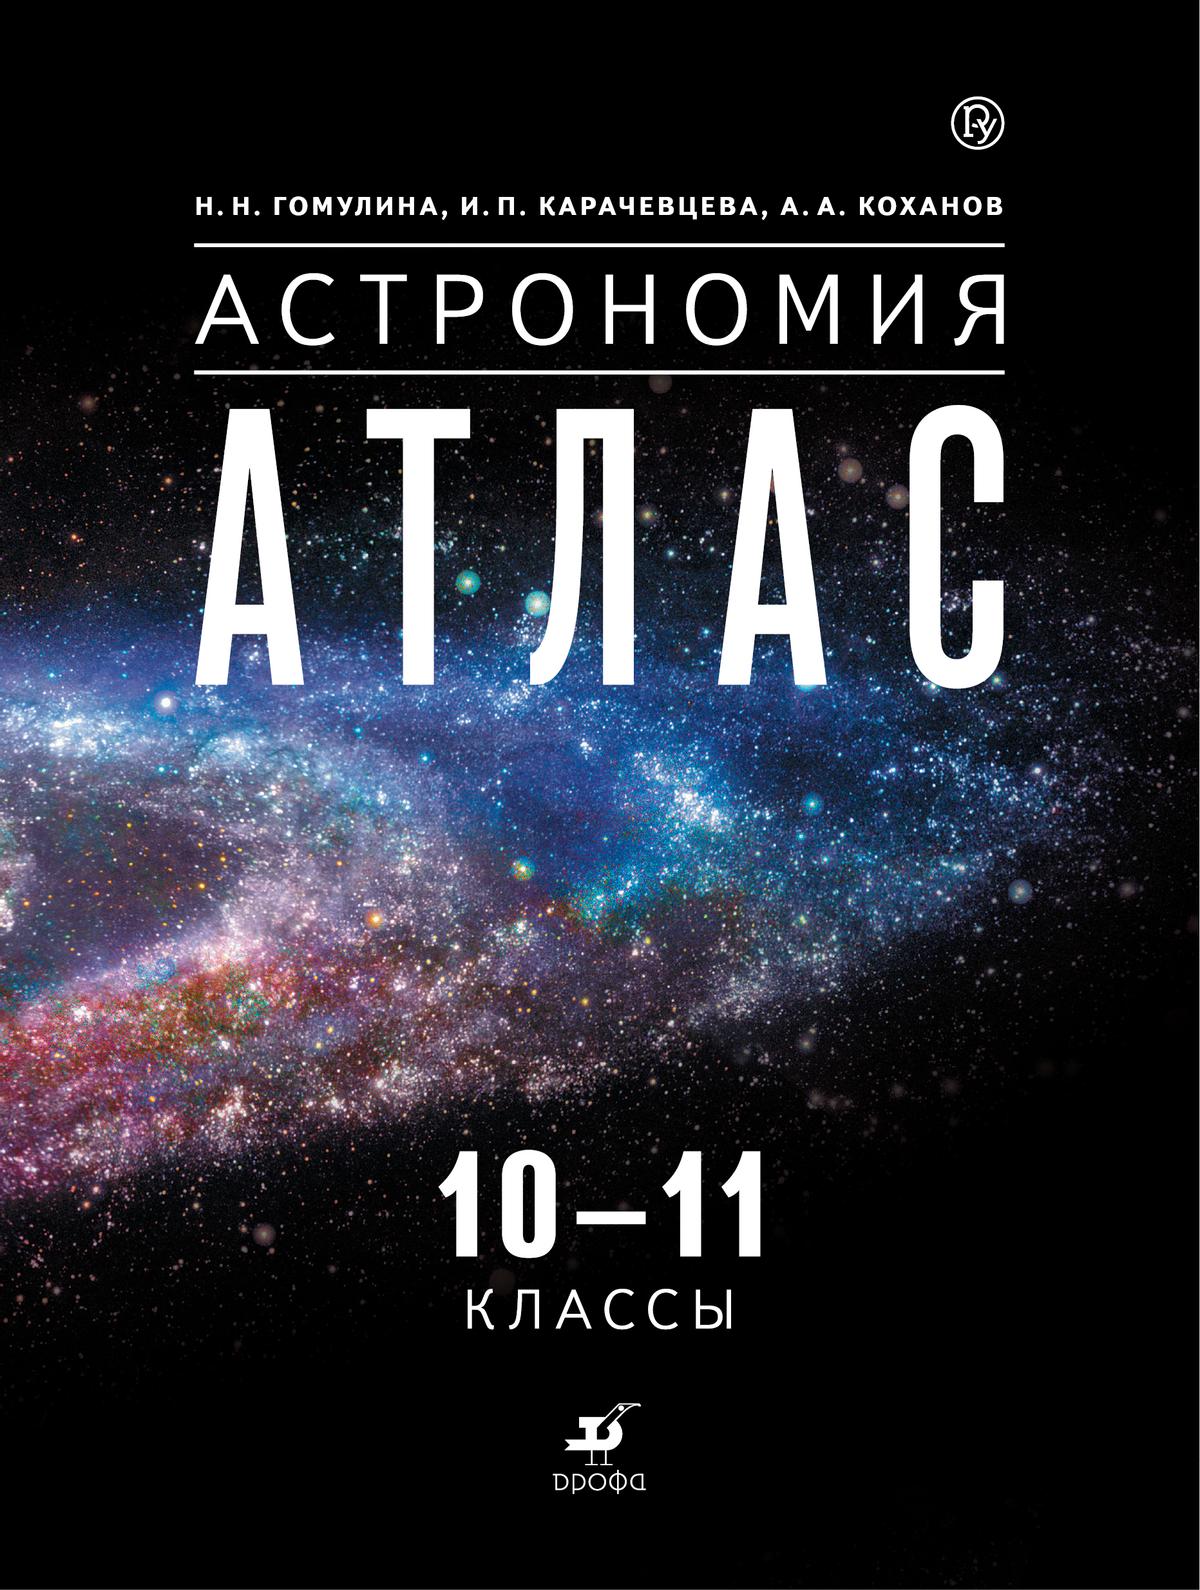 Воронцов-Вельяминов. Астрономия. 10-11 классы. Атлас (Гомулина, Карачевцева, Коханов) 1